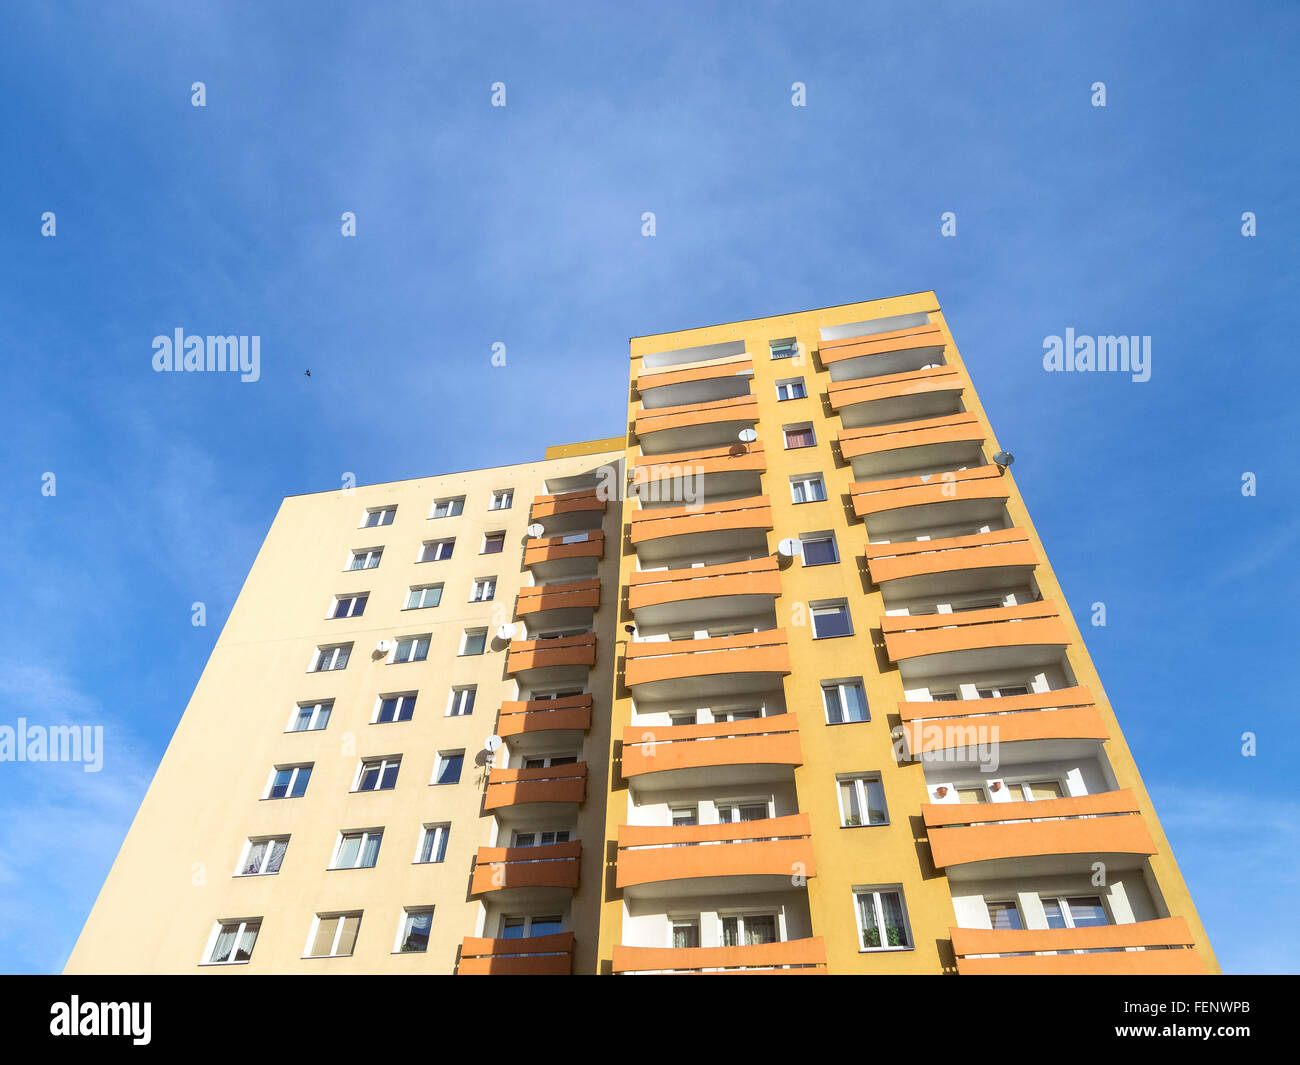 Wohn-Wohnung gegen blauen Himmel. Stockfoto